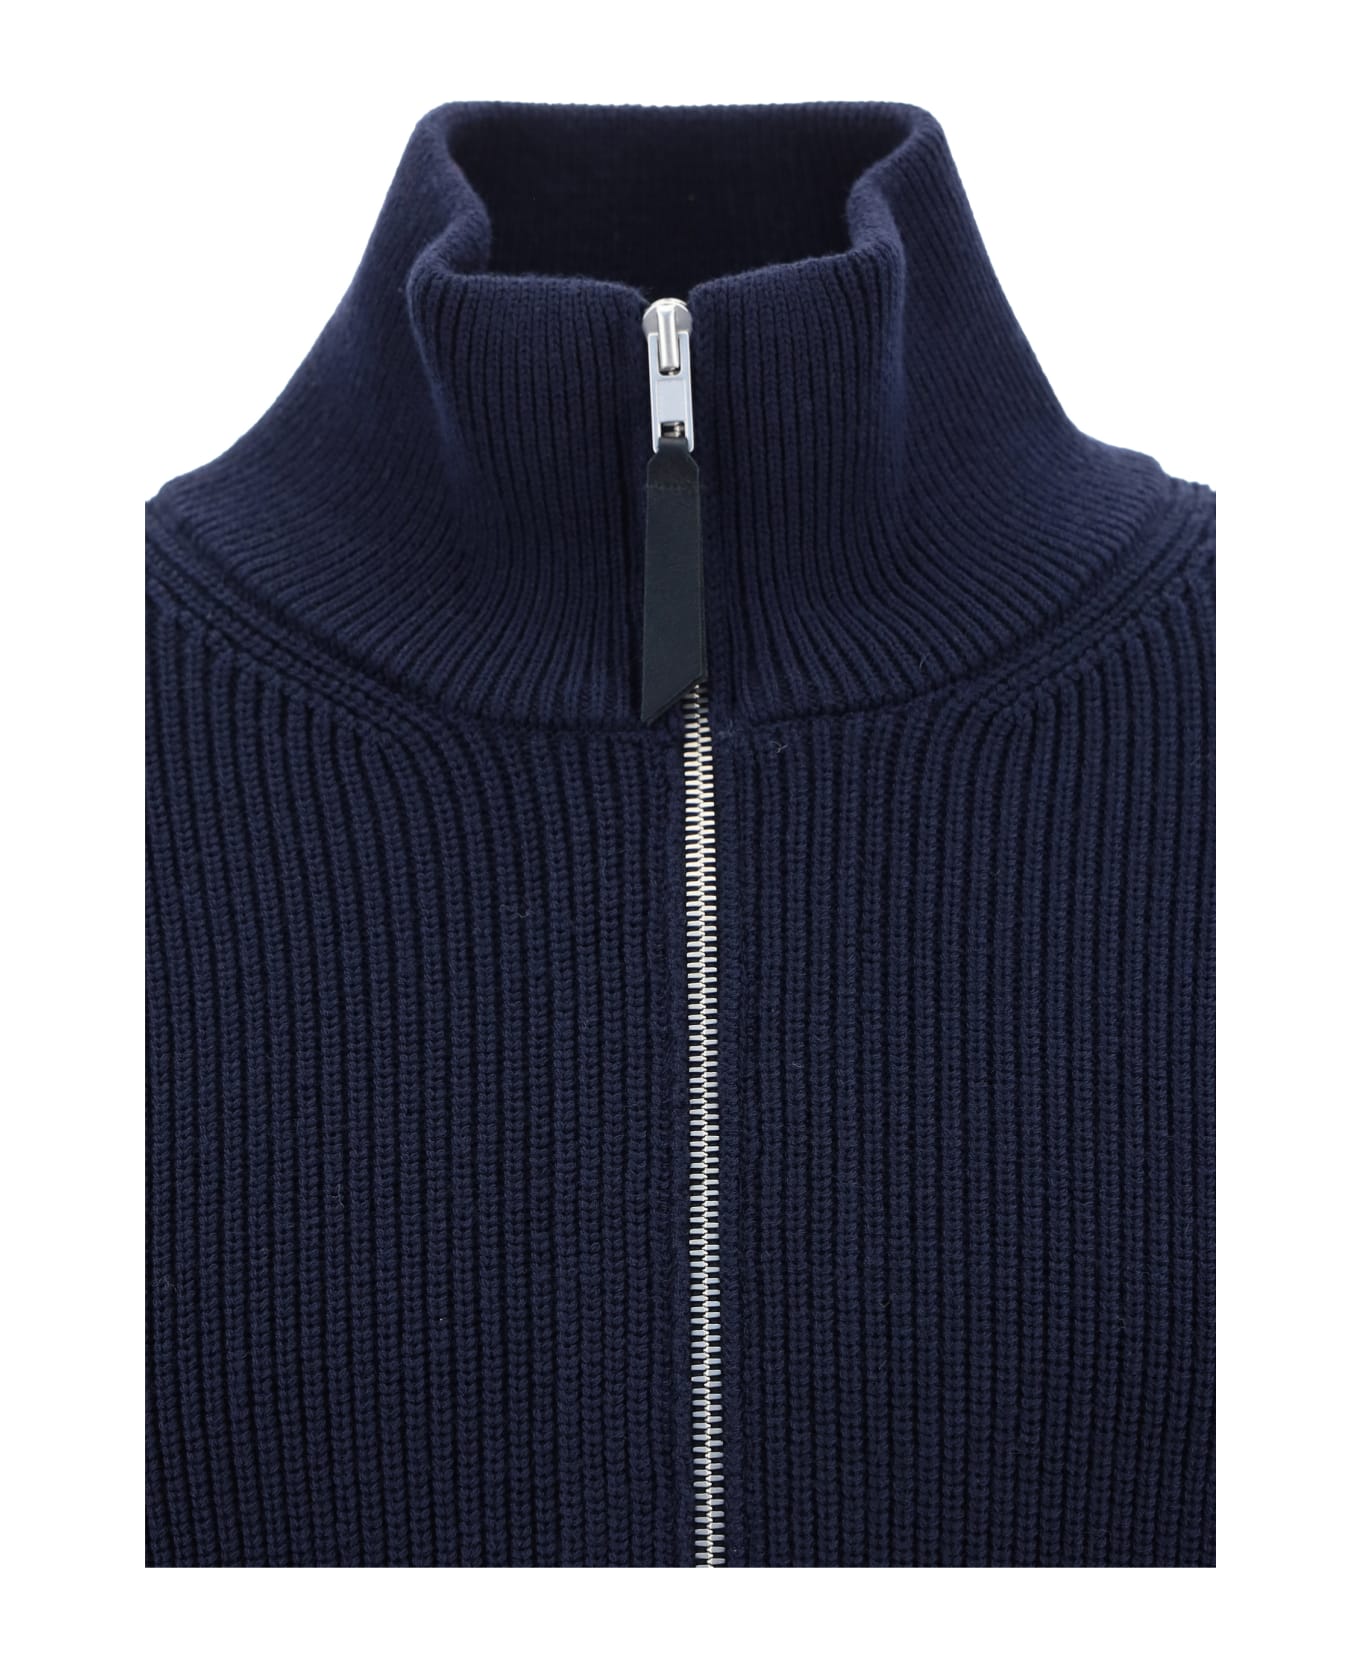 Maison Margiela Zip Sweater - 511f